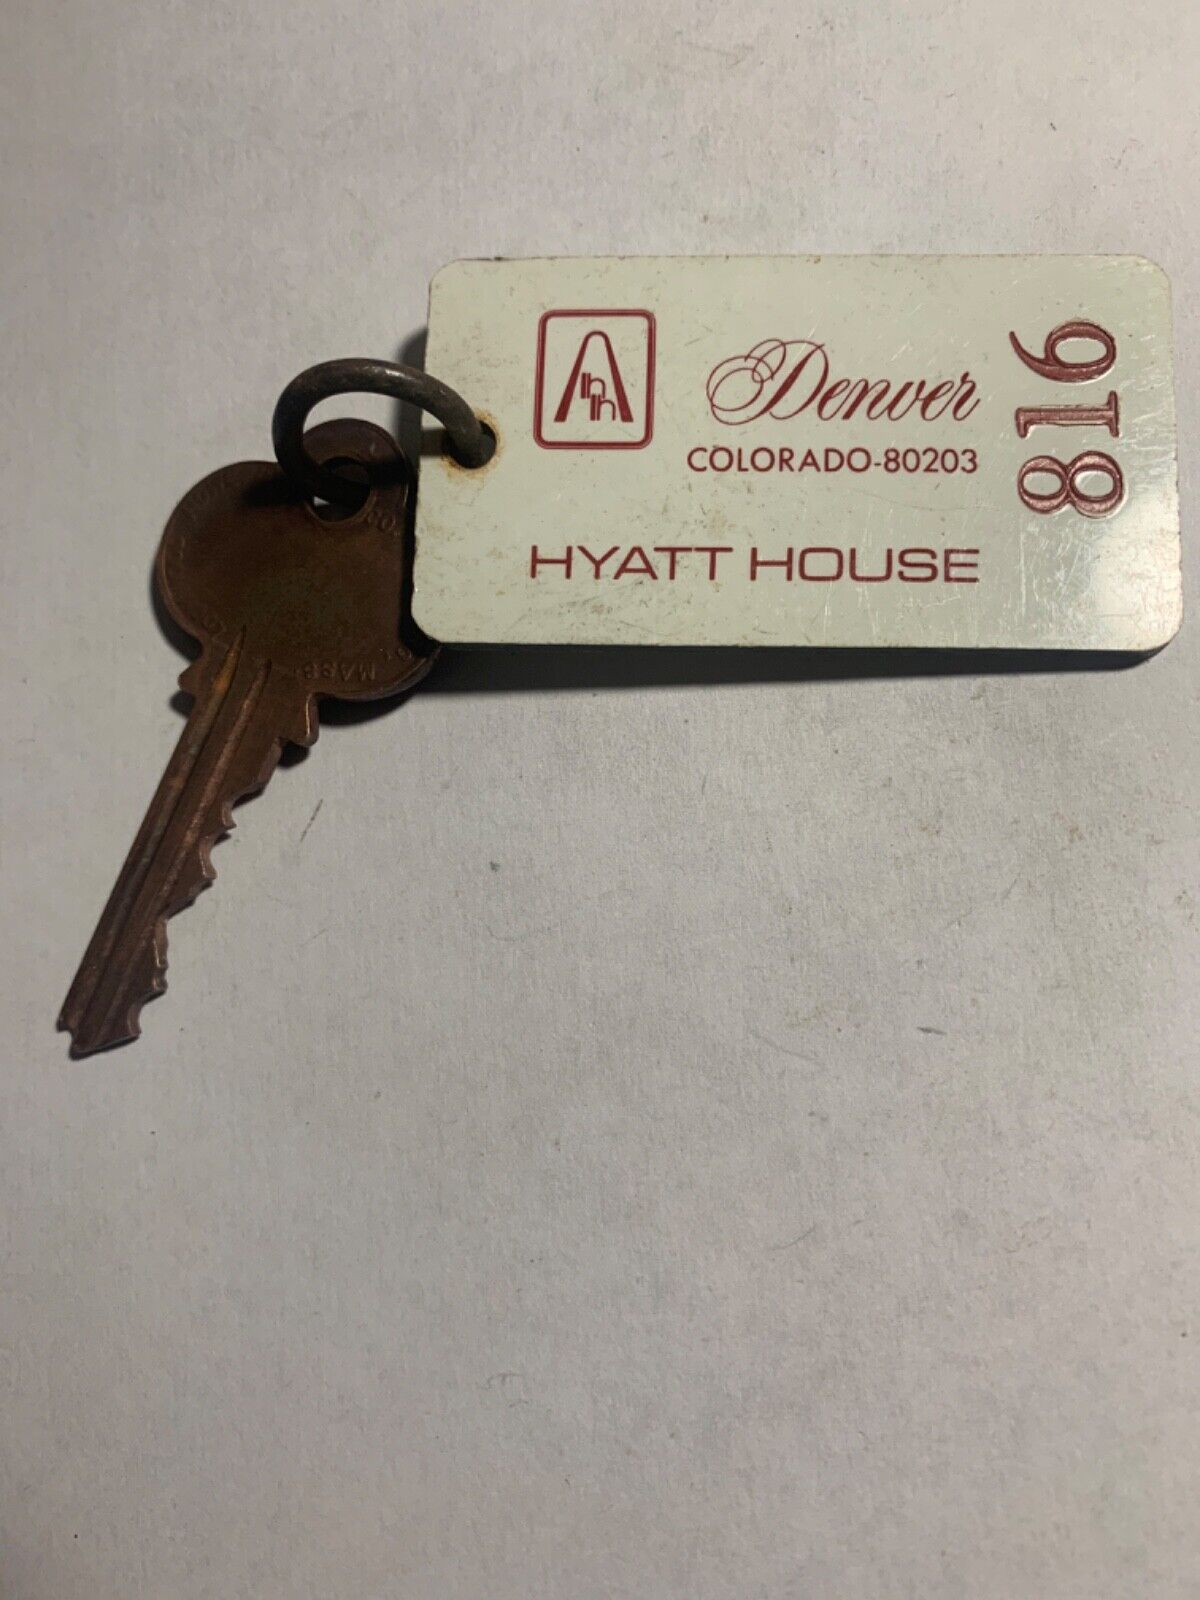 Hyatt House Hotel Motel Room Key Fob & Key Denver Colorado #816